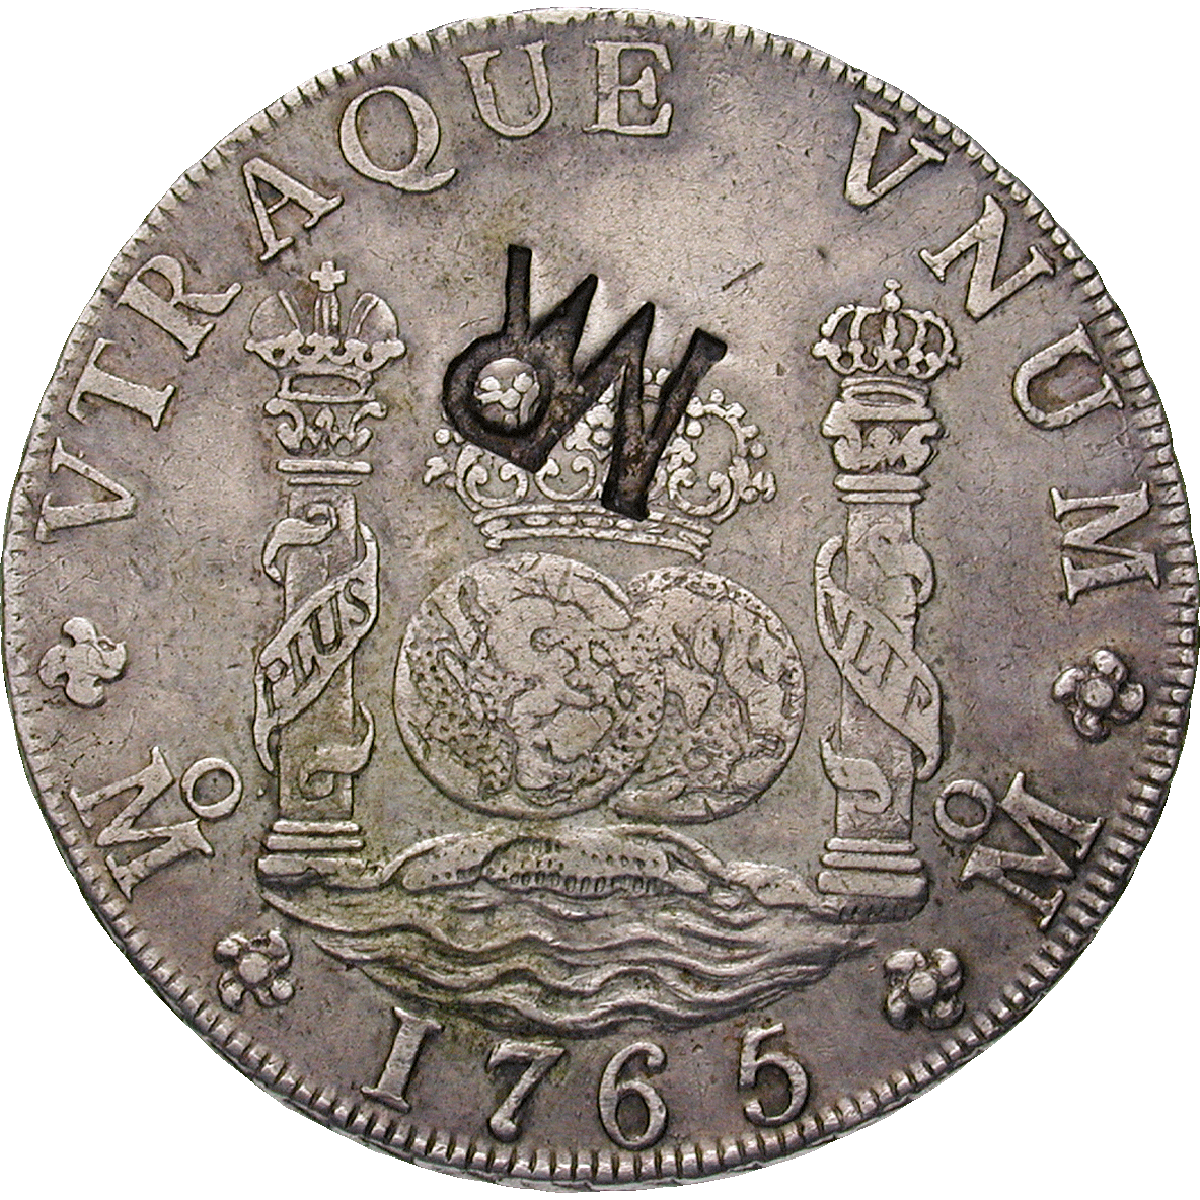 Mosambik, José I. von Portugal, Real de a ocho (Peso) 1765 mit mosambikanischem Gegenstempel (reverse)